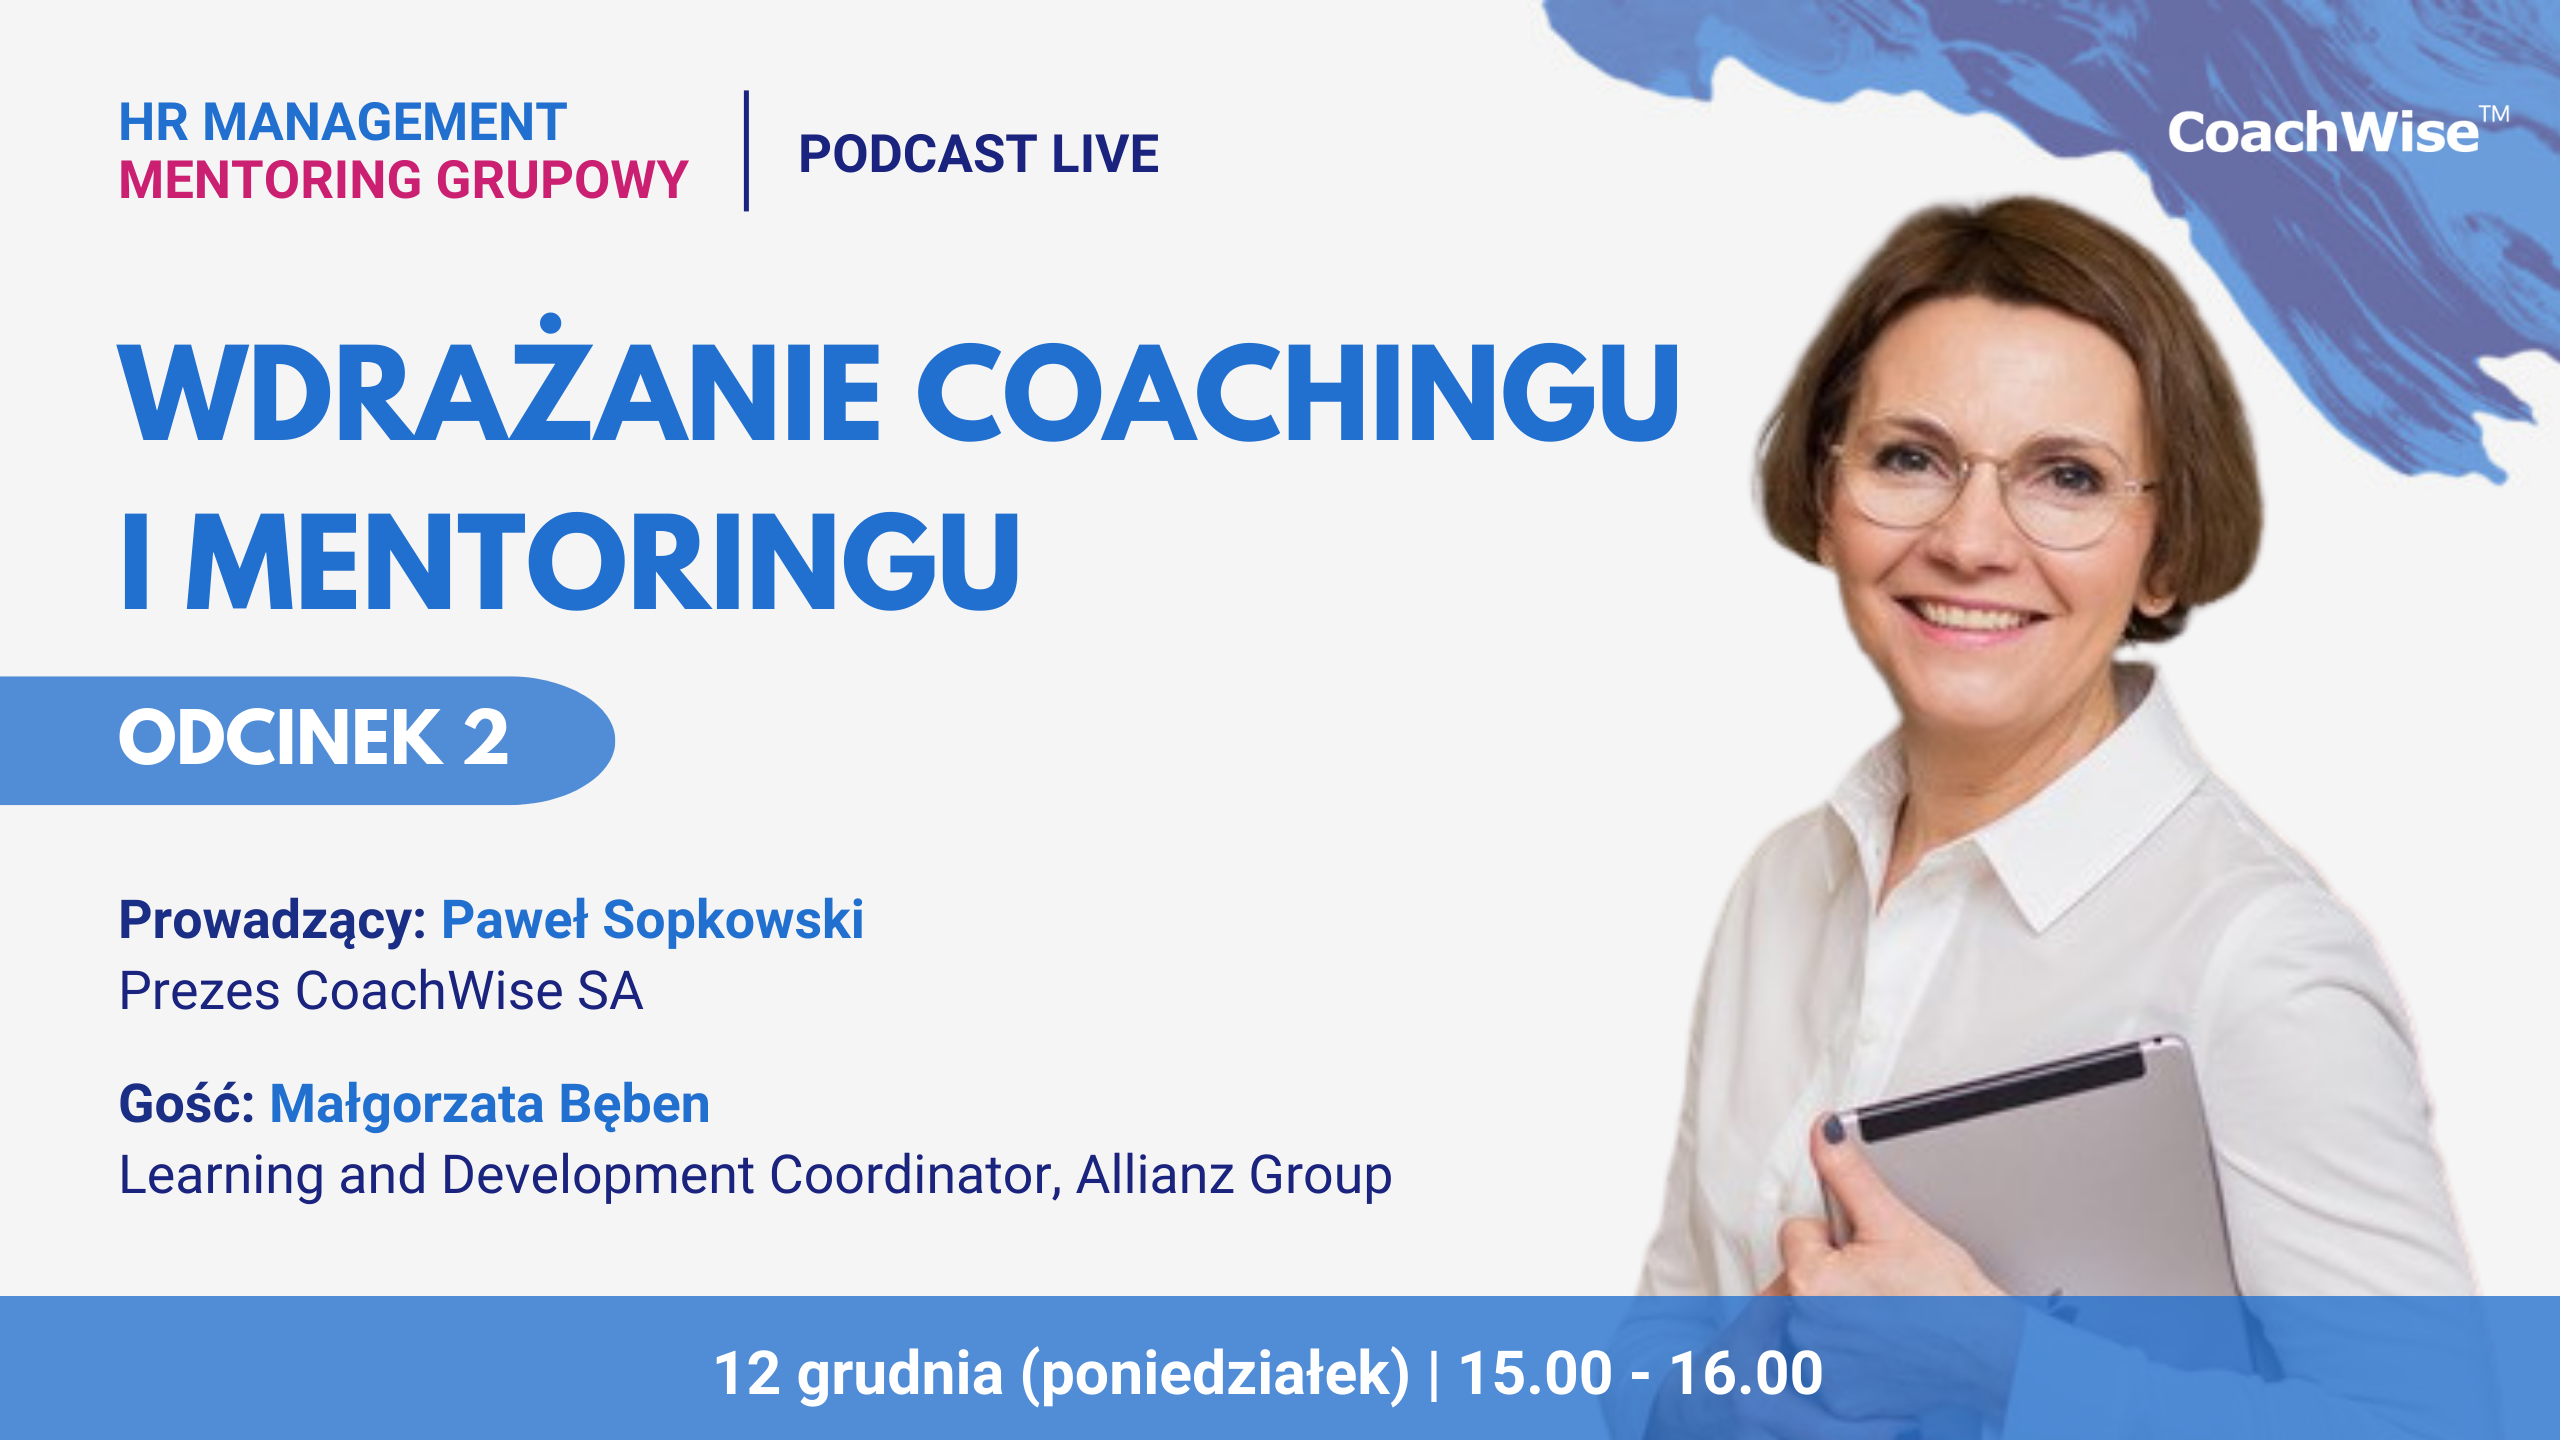 Podcast Live Wdrażanie coachingu i mentoringu CoachWise Małgorzata Bęben